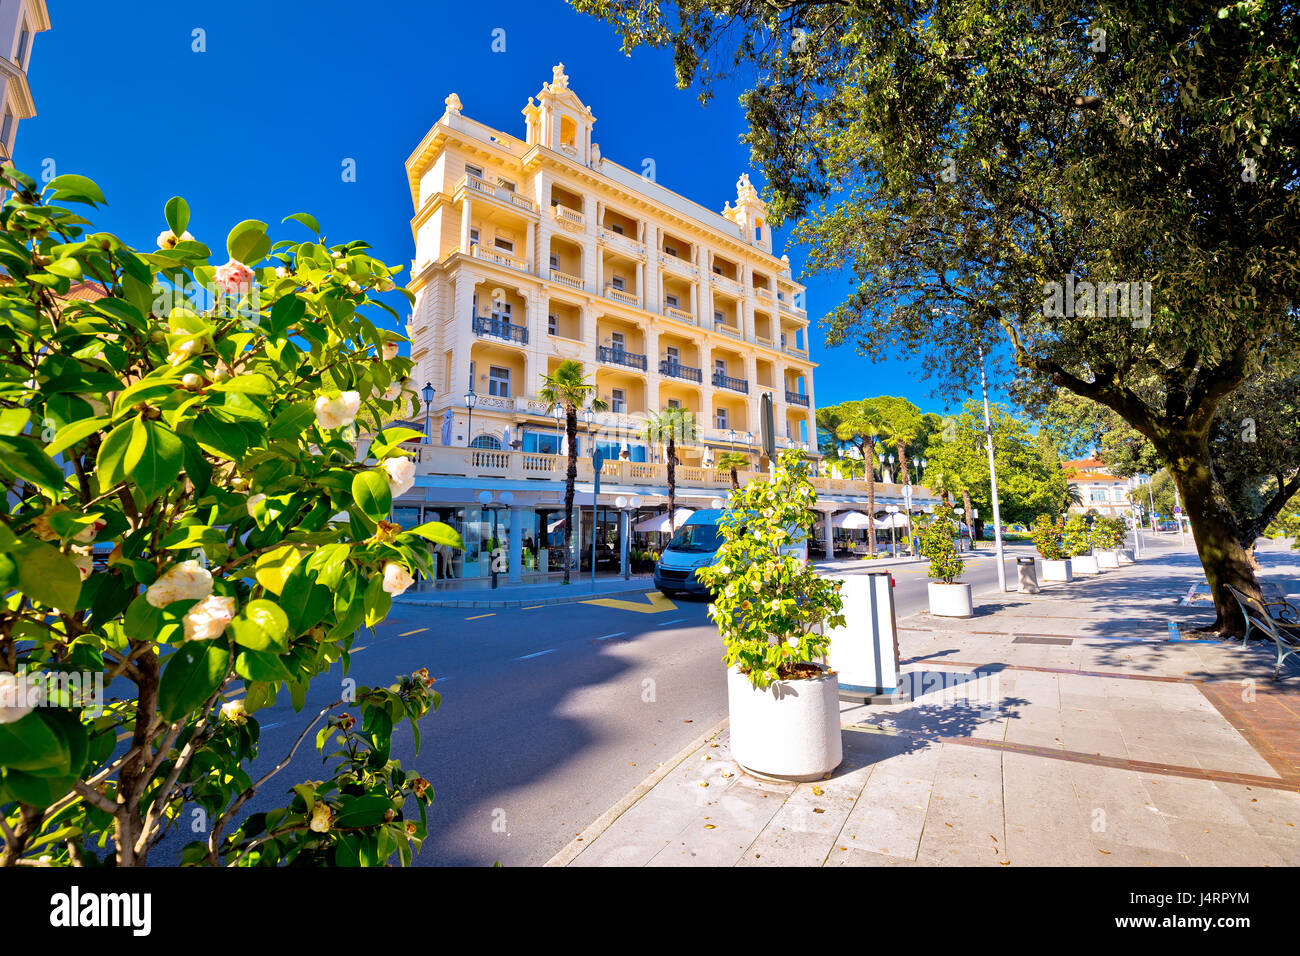 Città di Opatija street view, Adriatico destinazione turistica nella baia di Kvarner, Croazia Foto Stock